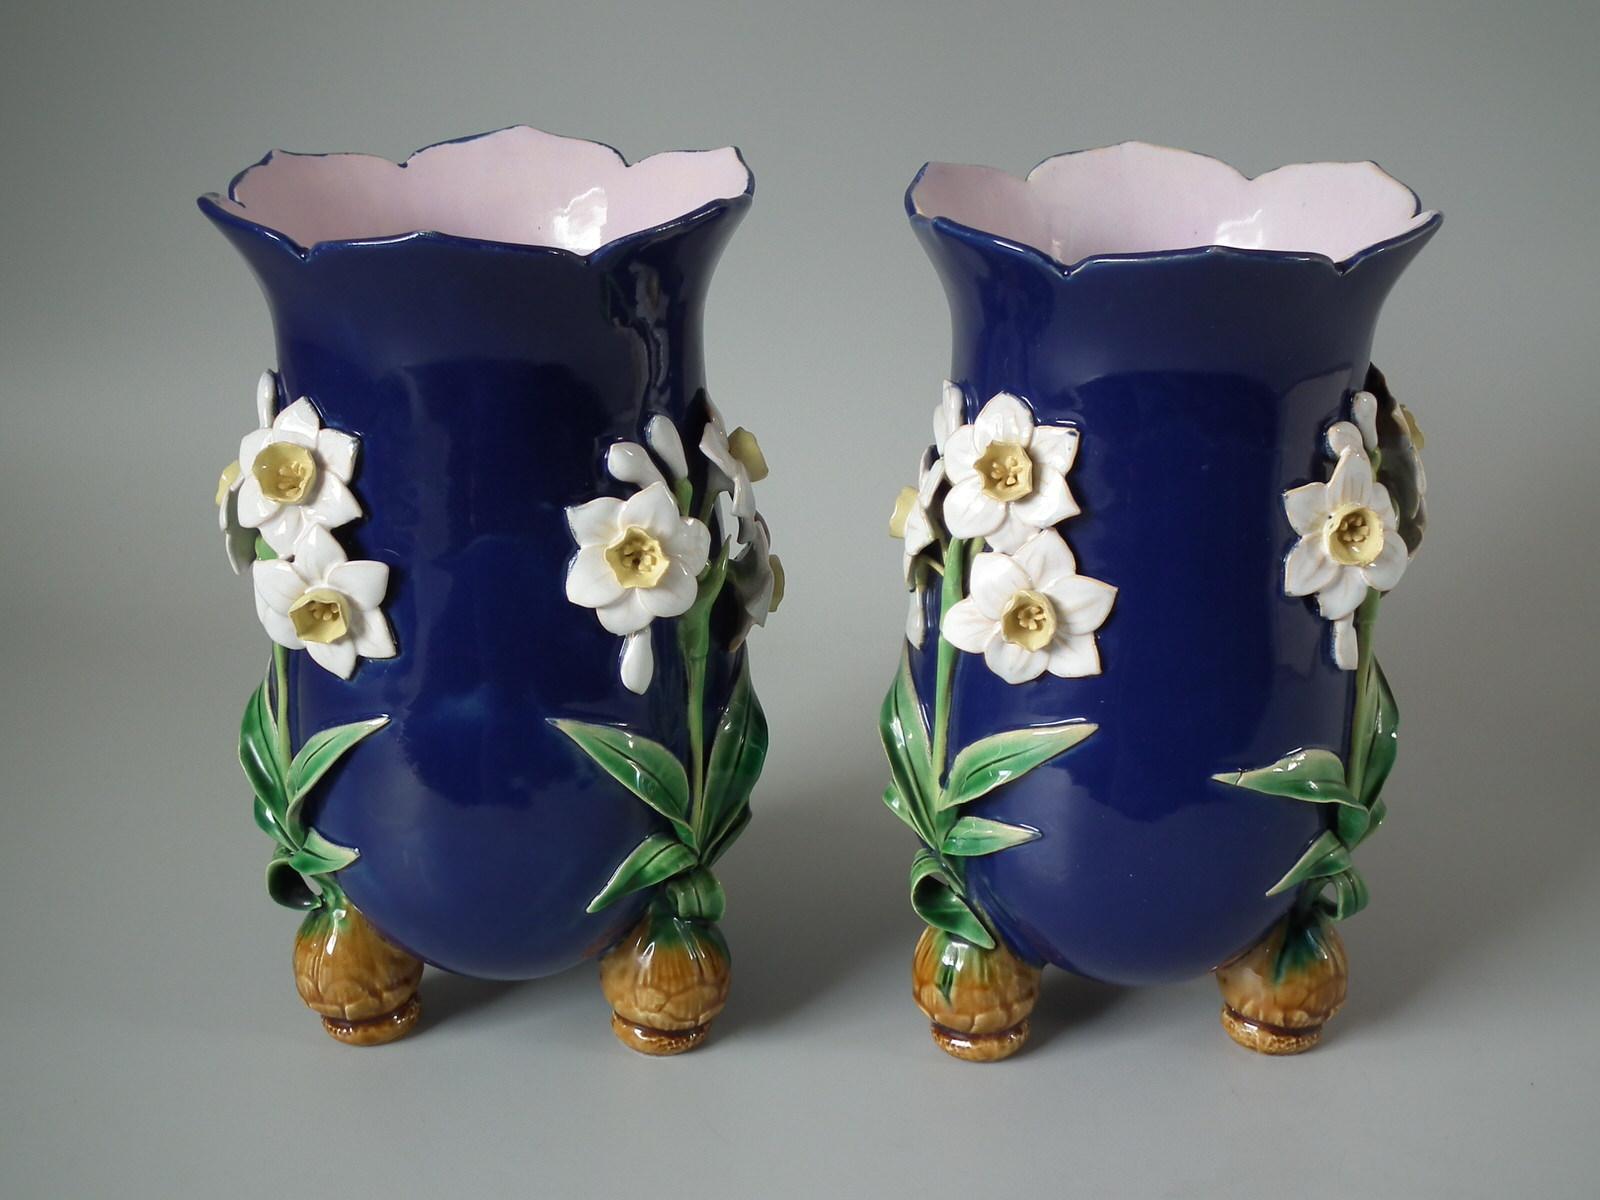 Ein Paar Minton Majolika-Vasen mit Narzissen auf Zwiebelfüßen. Version mit kobaltblauem Boden. Färbung: kobaltblau, grün, weiß, sind vorherrschend. Das Stück trägt Herstellermarken der Töpferei Minton. Es trägt die Musternummer 